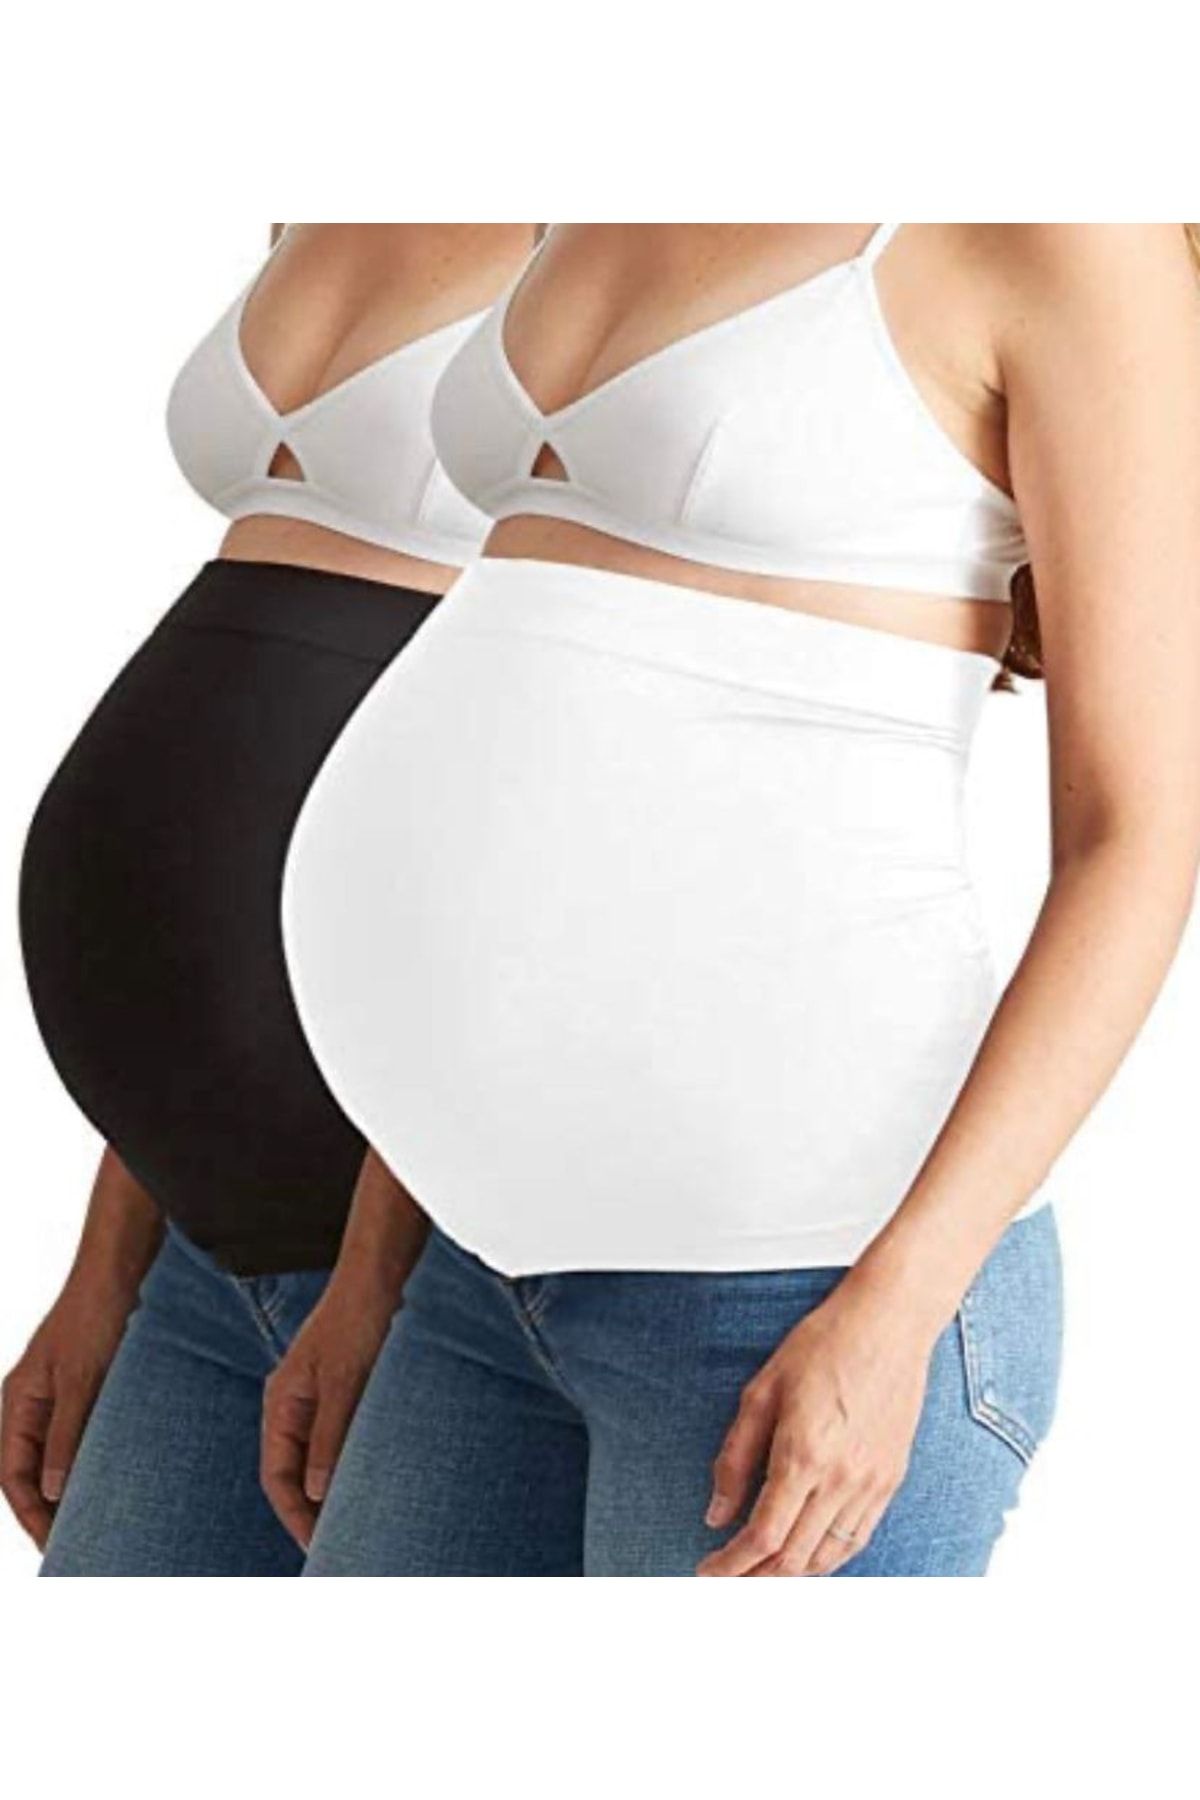 Genel Markalar Yüksek Bel 2 Parçadan Oluşan Hamile Destekleyici Bel Bandı Seti Beyaz Orta